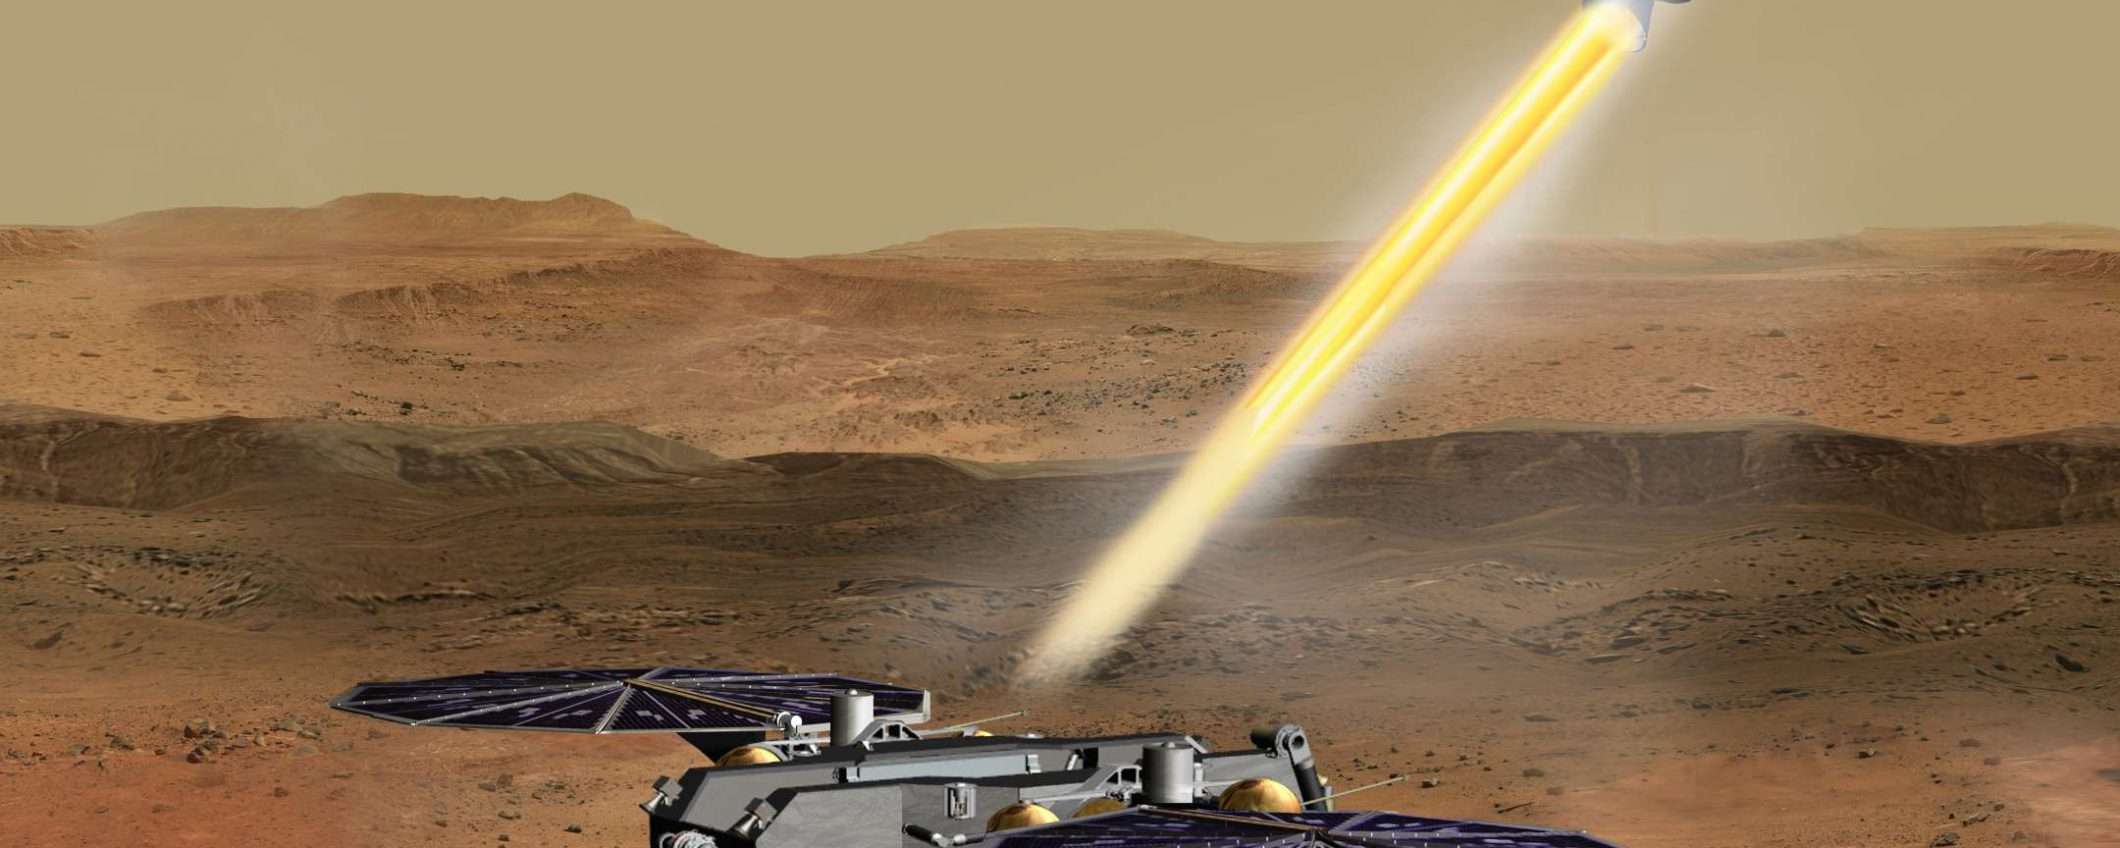 Mars Sample Return Mission: ritorno sulla Terra